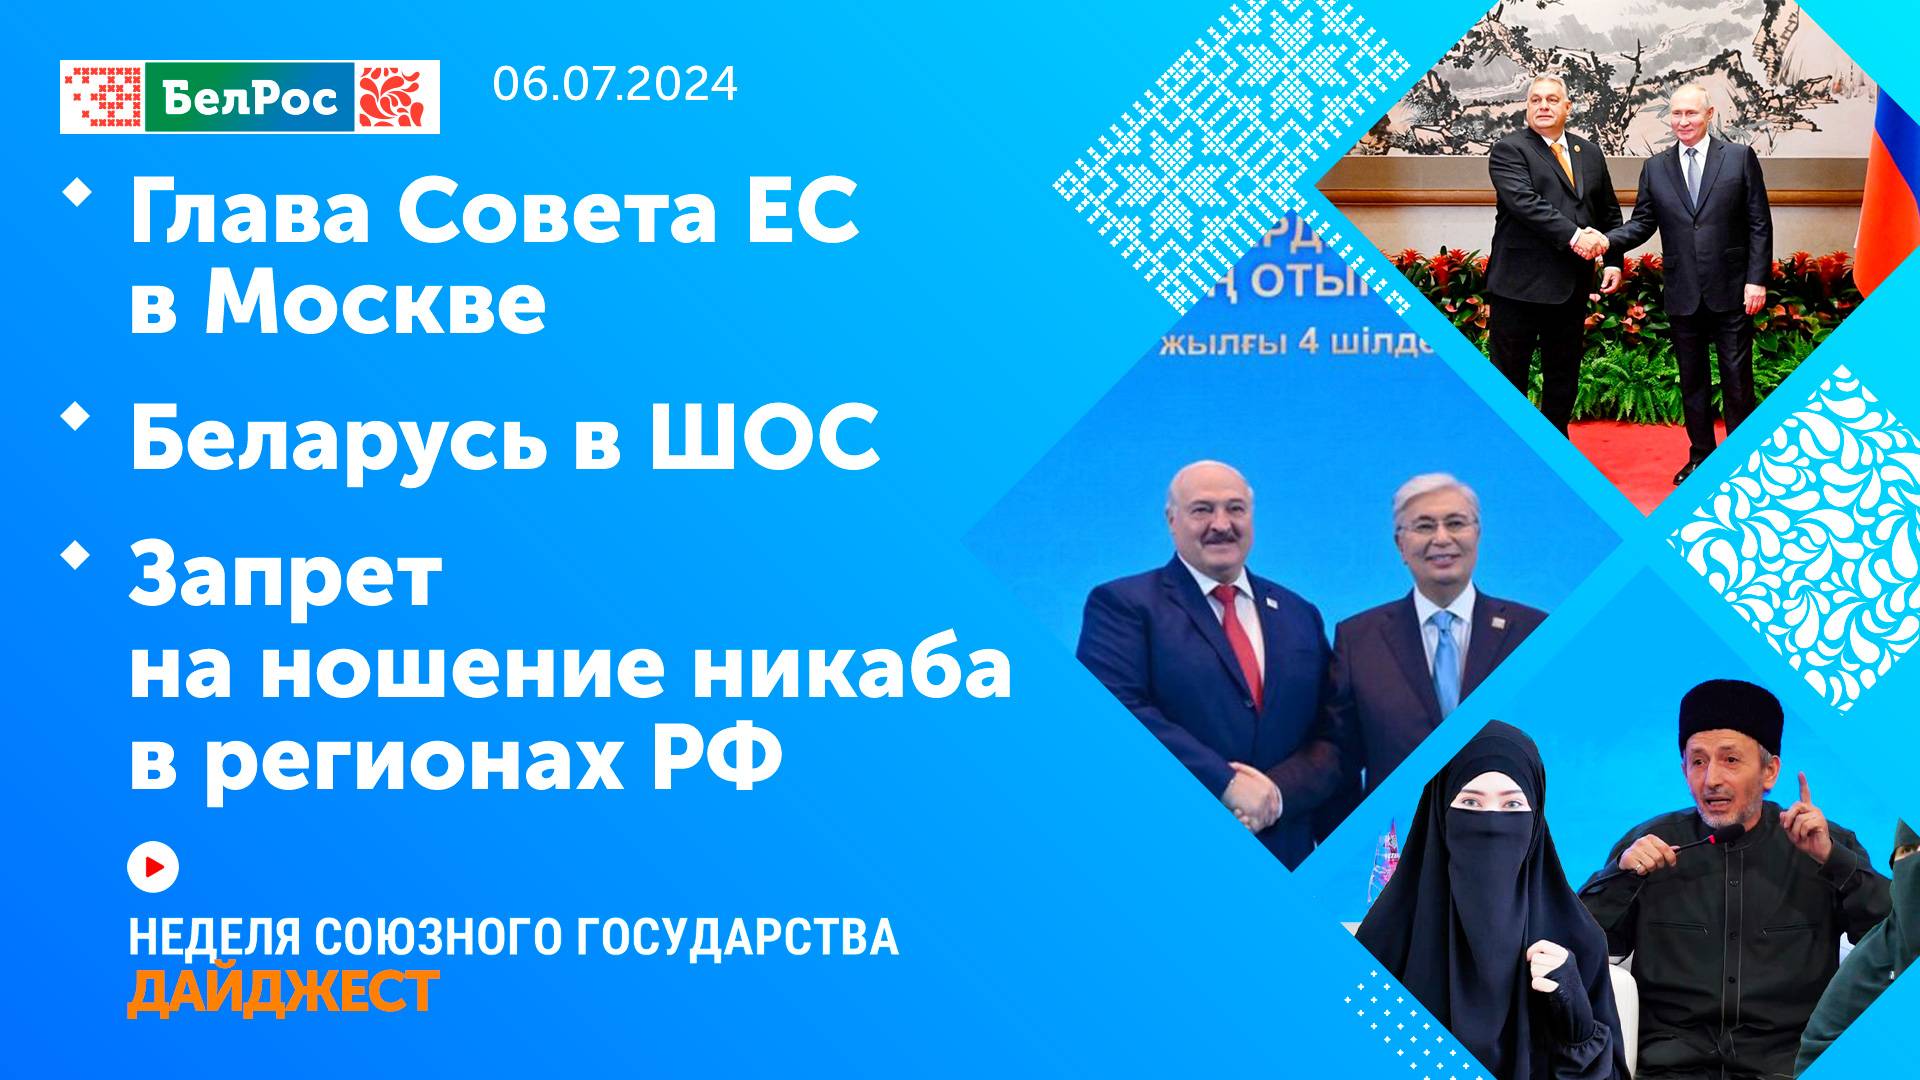 Неделя СГ: Глава Совета ЕС в Москве / Беларусь в ШОС / Запрет на ношение никаба в регионах РФ